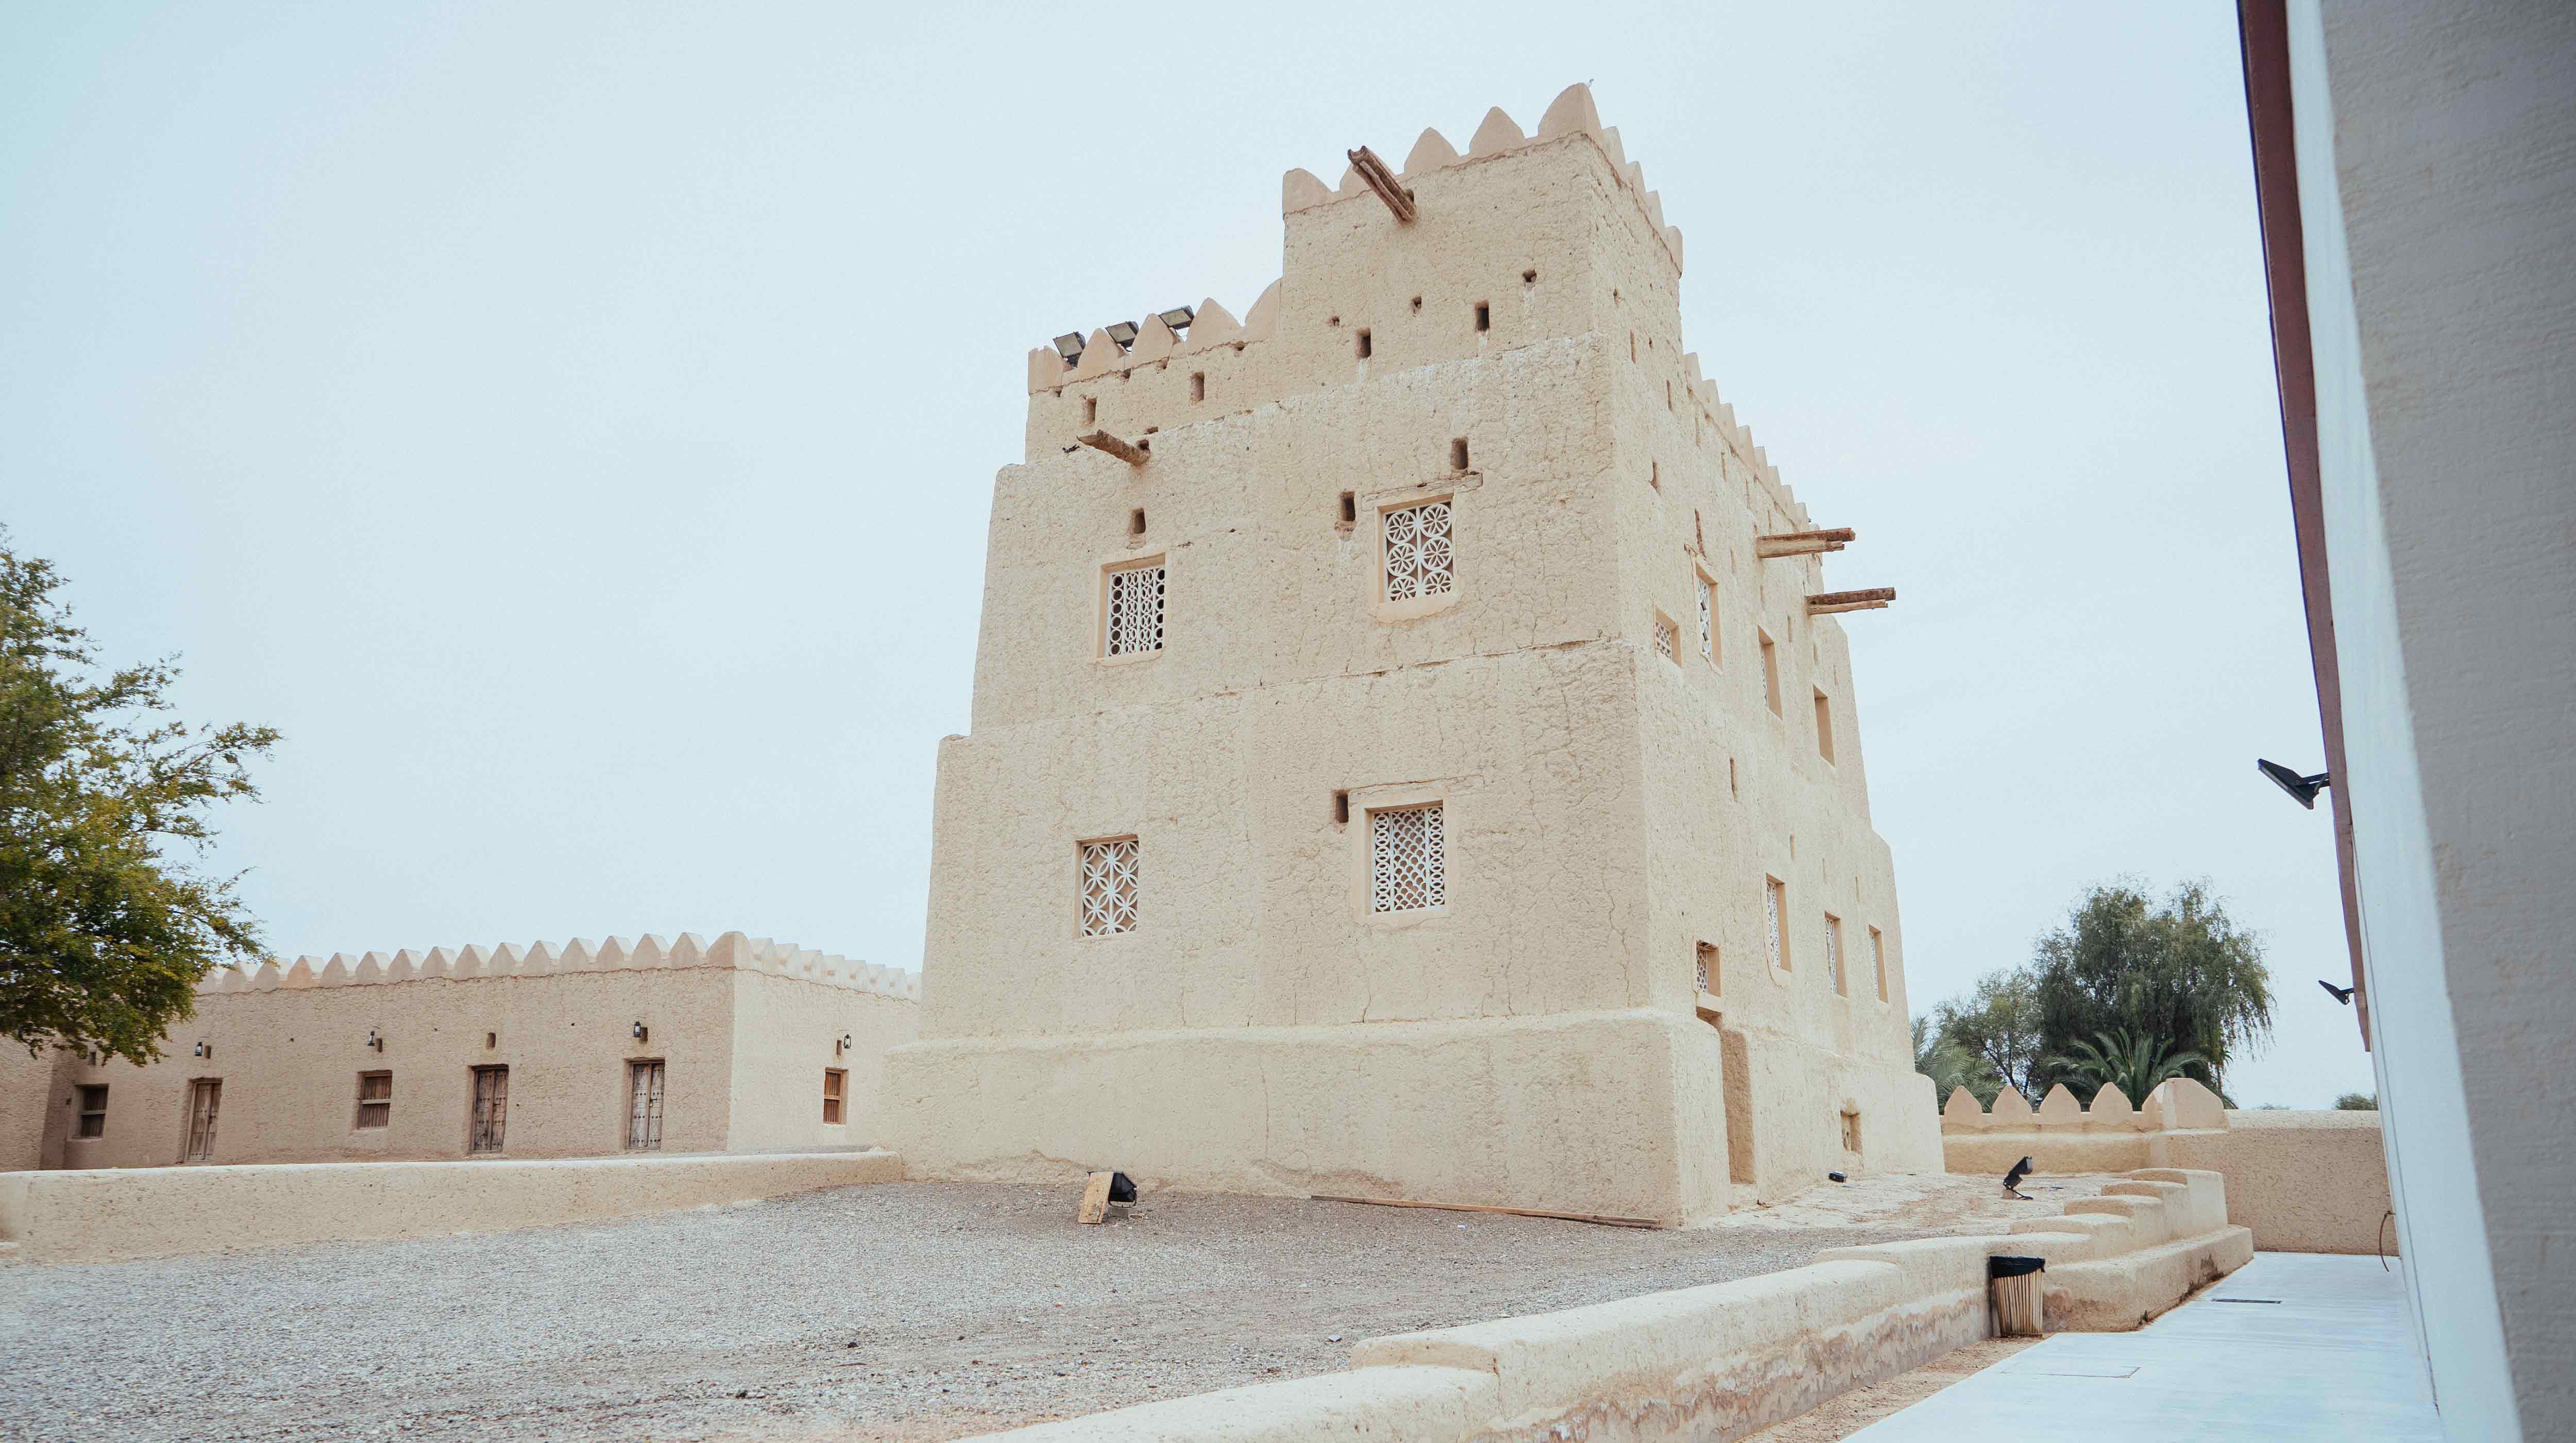 מרכז האומנויות אל-קטארה (Al Qattara Arts Centre)